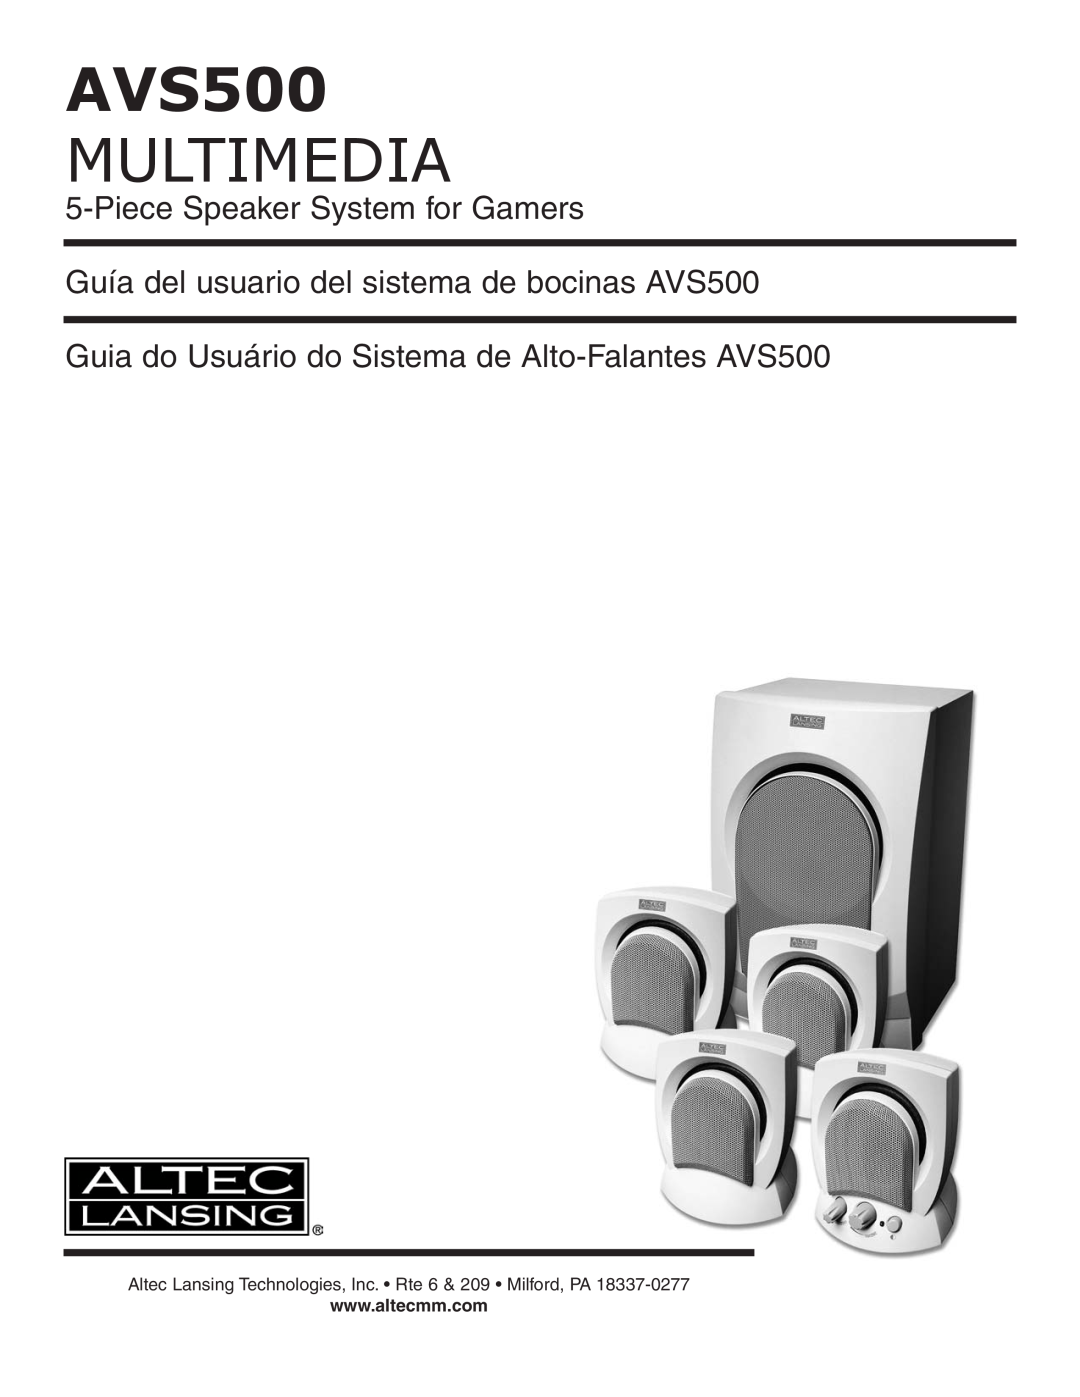 Altec Lansing manual Multimedia, PieceSpeaker System for Gamers, Guía del usuario del sistema de bocinas AVS500 